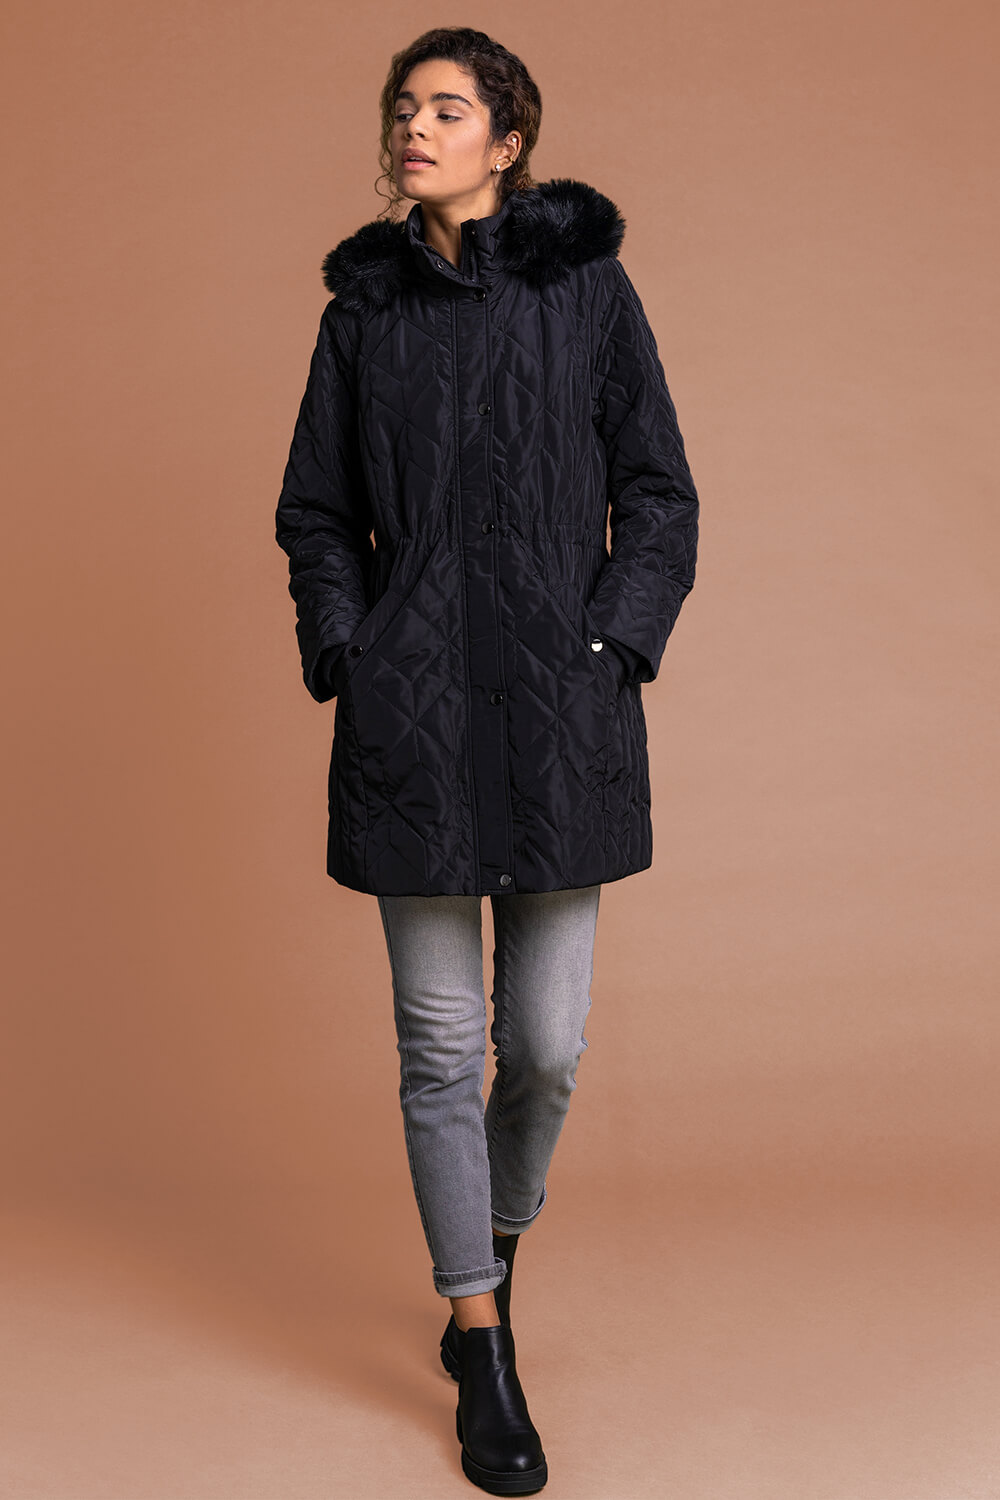 Black Faux Fur Trim Hooded Parka Coat, Image 3 of 5